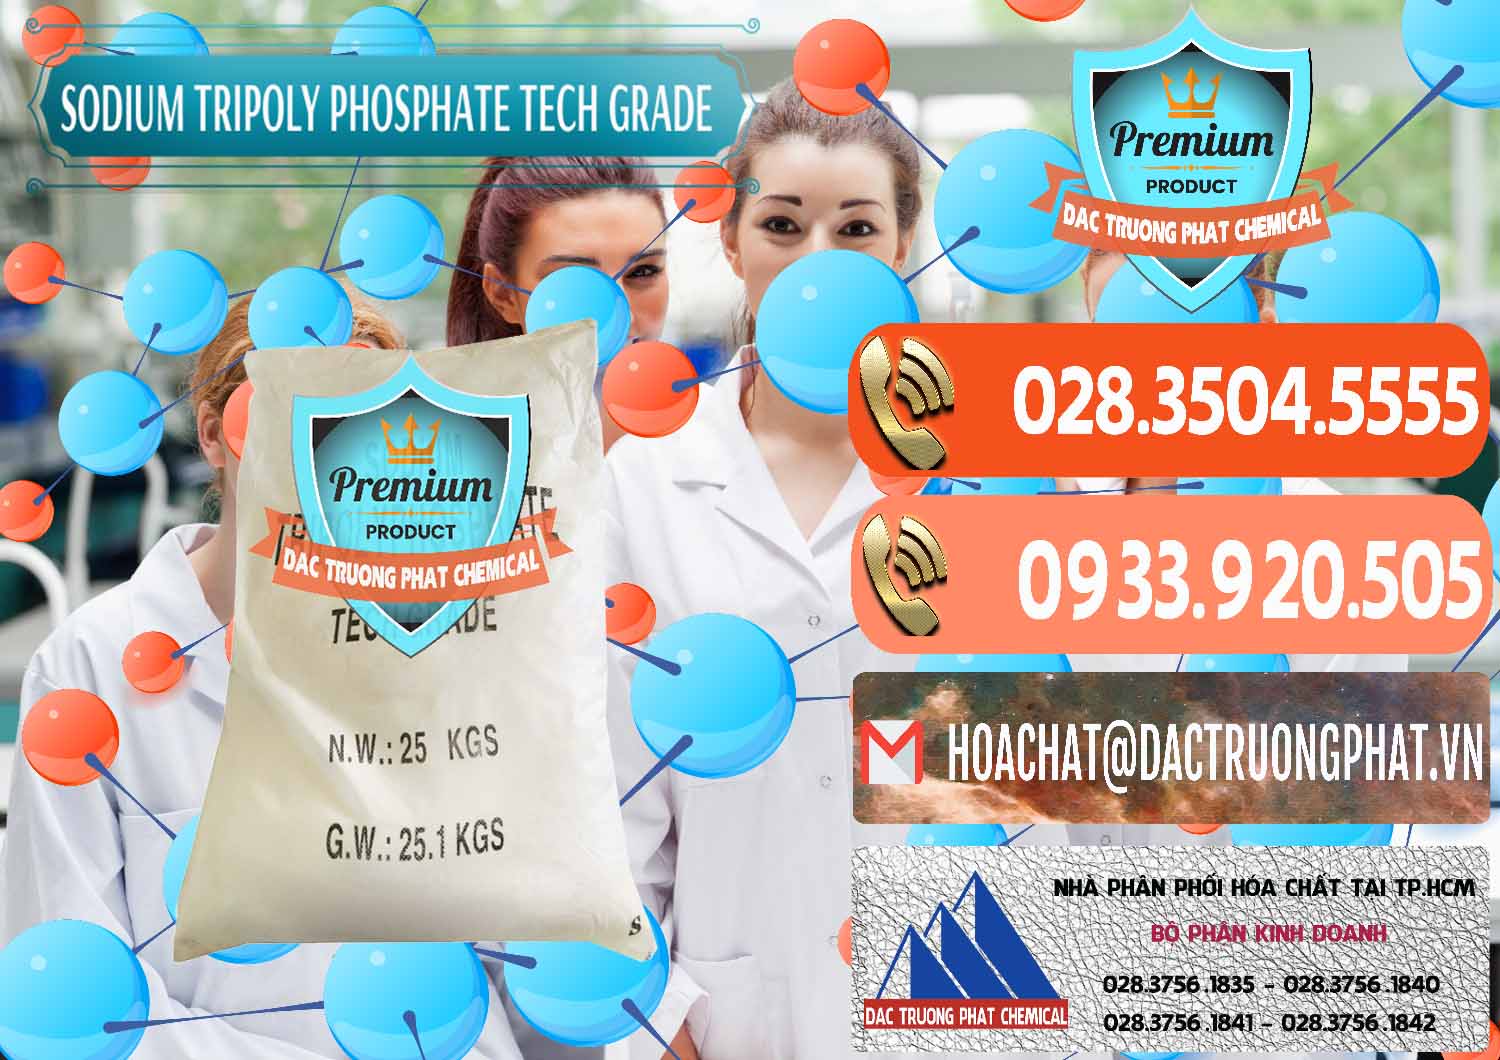 Đơn vị chuyên cung ứng ( bán ) Sodium Tripoly Phosphate - STPP Tech Grade Trung Quốc China - 0453 - Nơi chuyên bán & cung cấp hóa chất tại TP.HCM - hoachatmientay.com